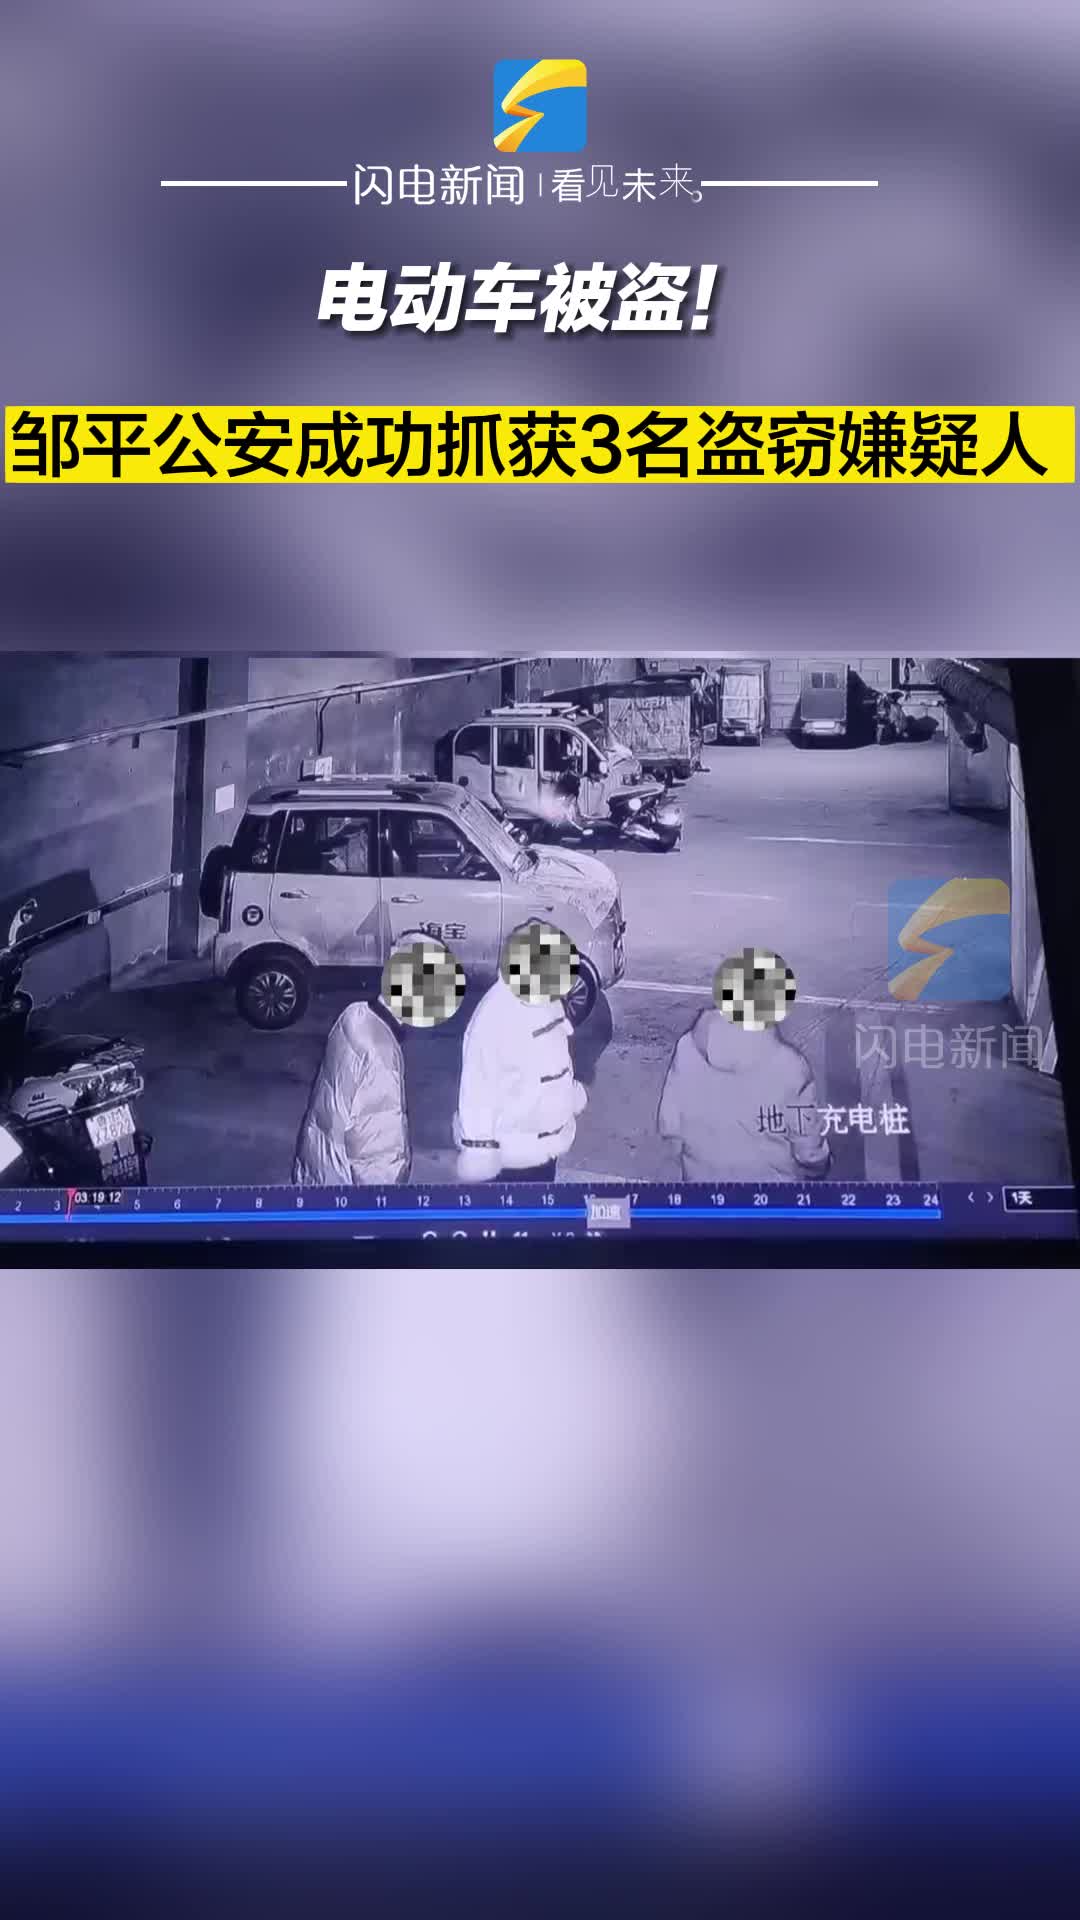 电动摩托车被盗！邹平公安成功抓获3名盗窃嫌疑人